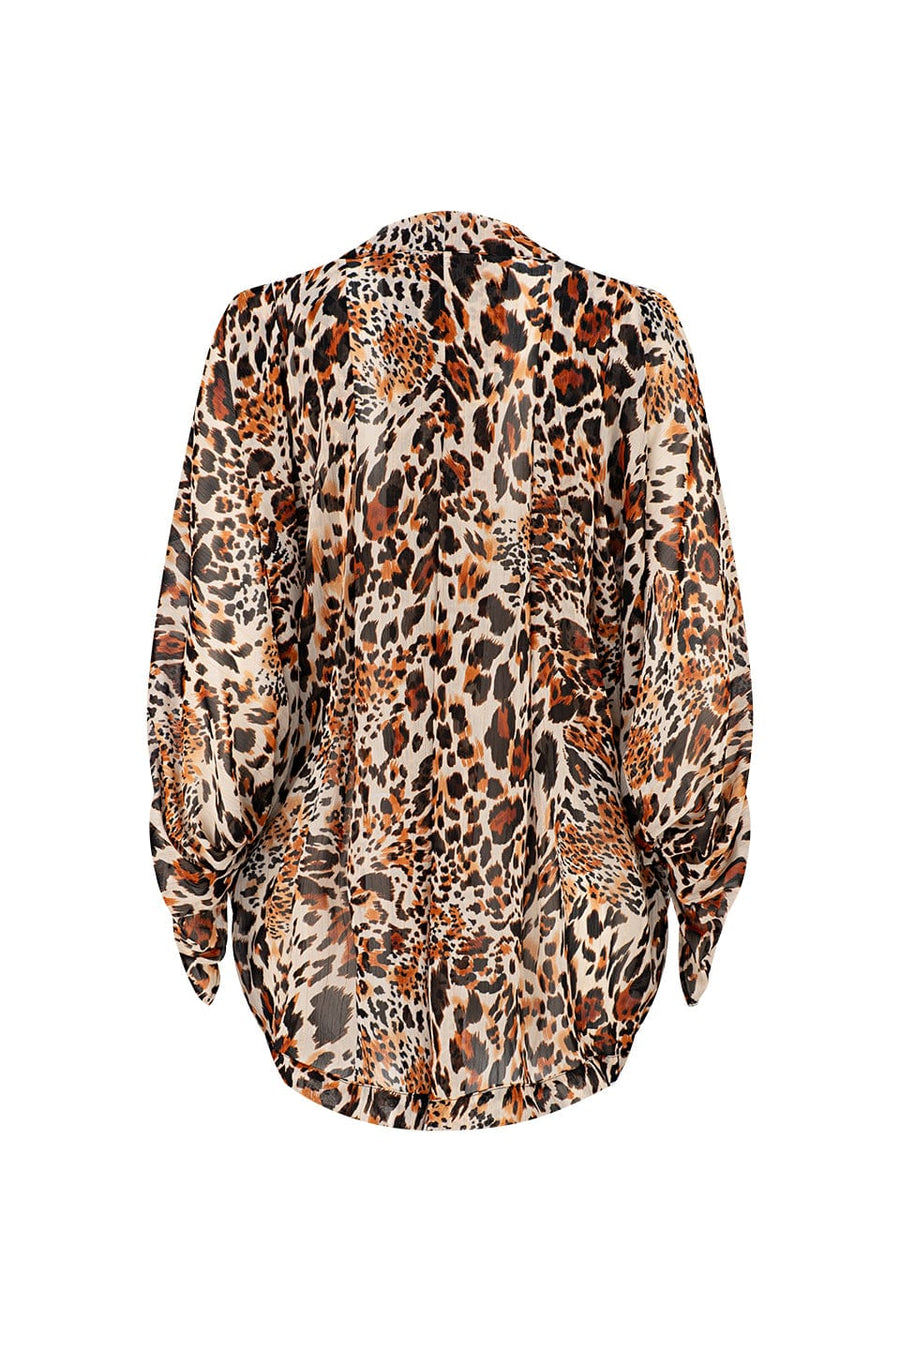 Alise Cocoon Kimono in Leopard Lurex